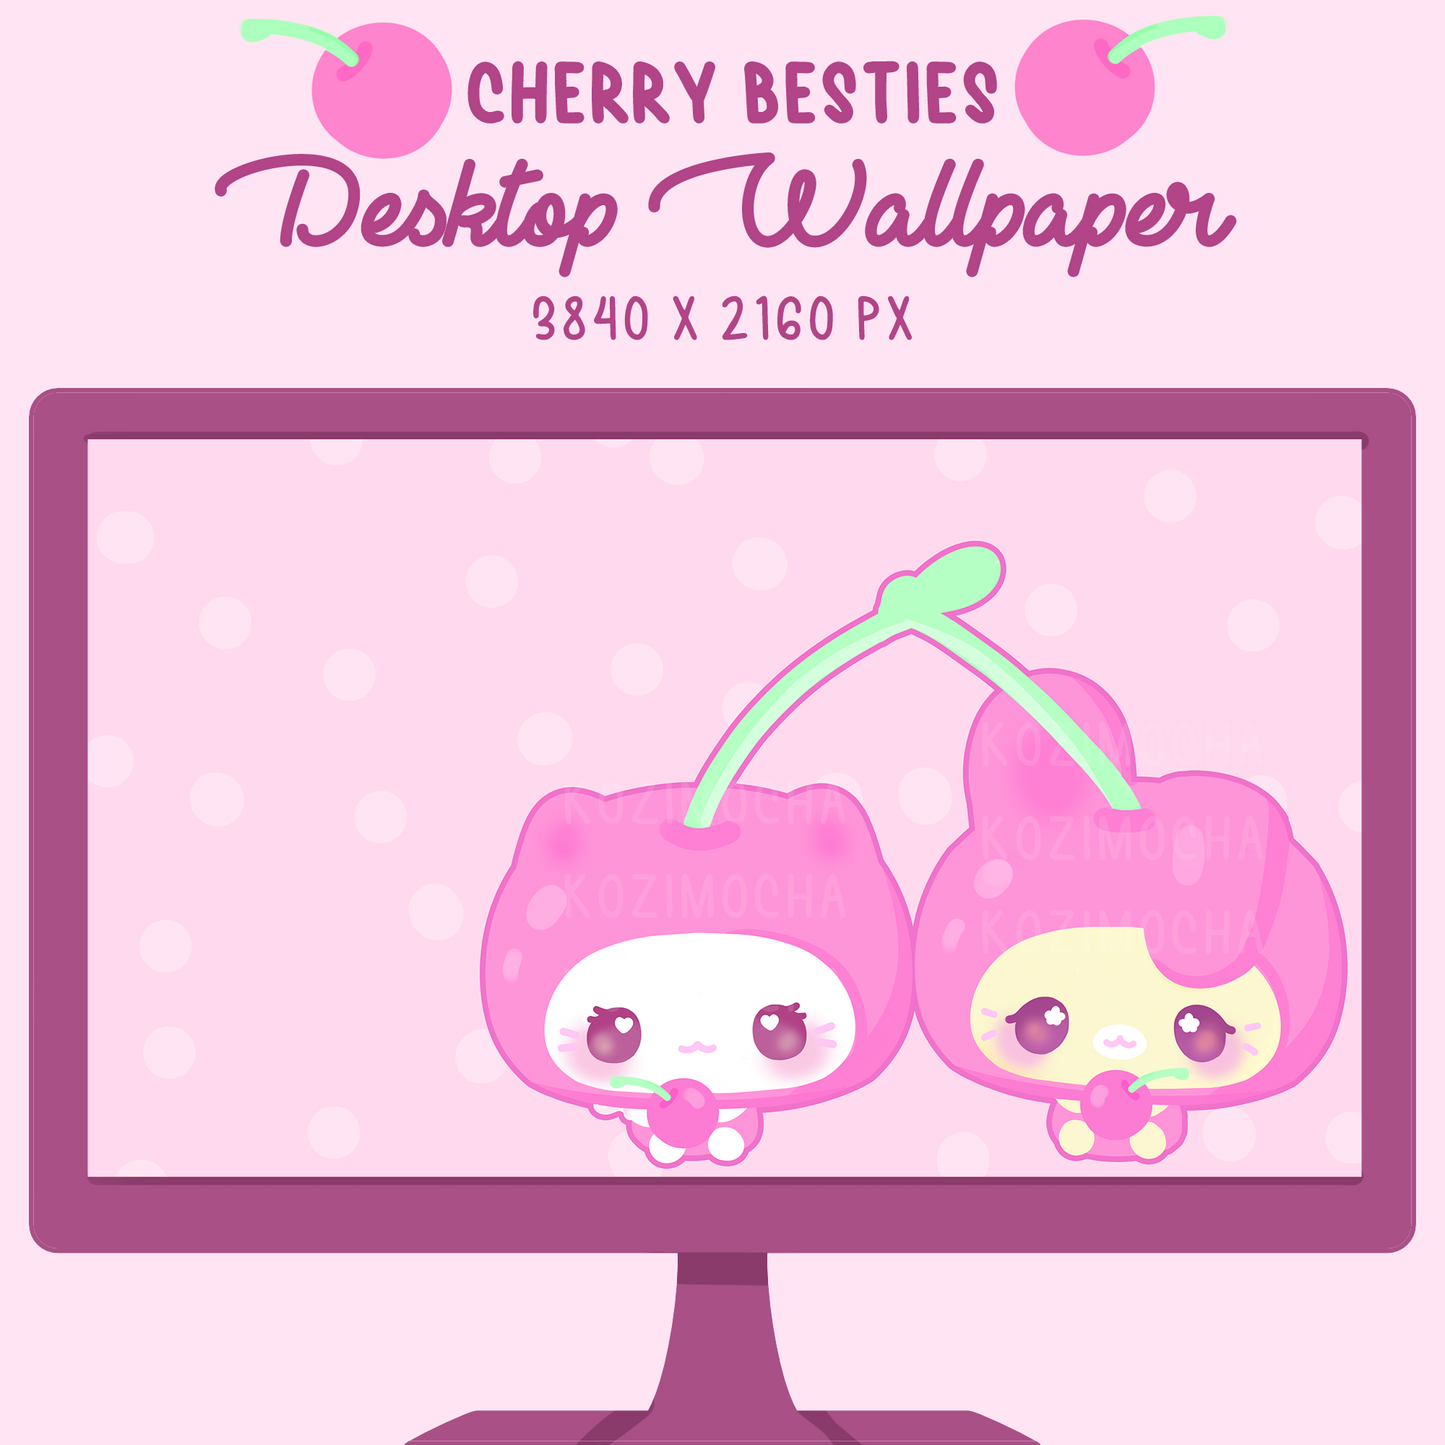 Cherry Besties Desktop Wallpaper